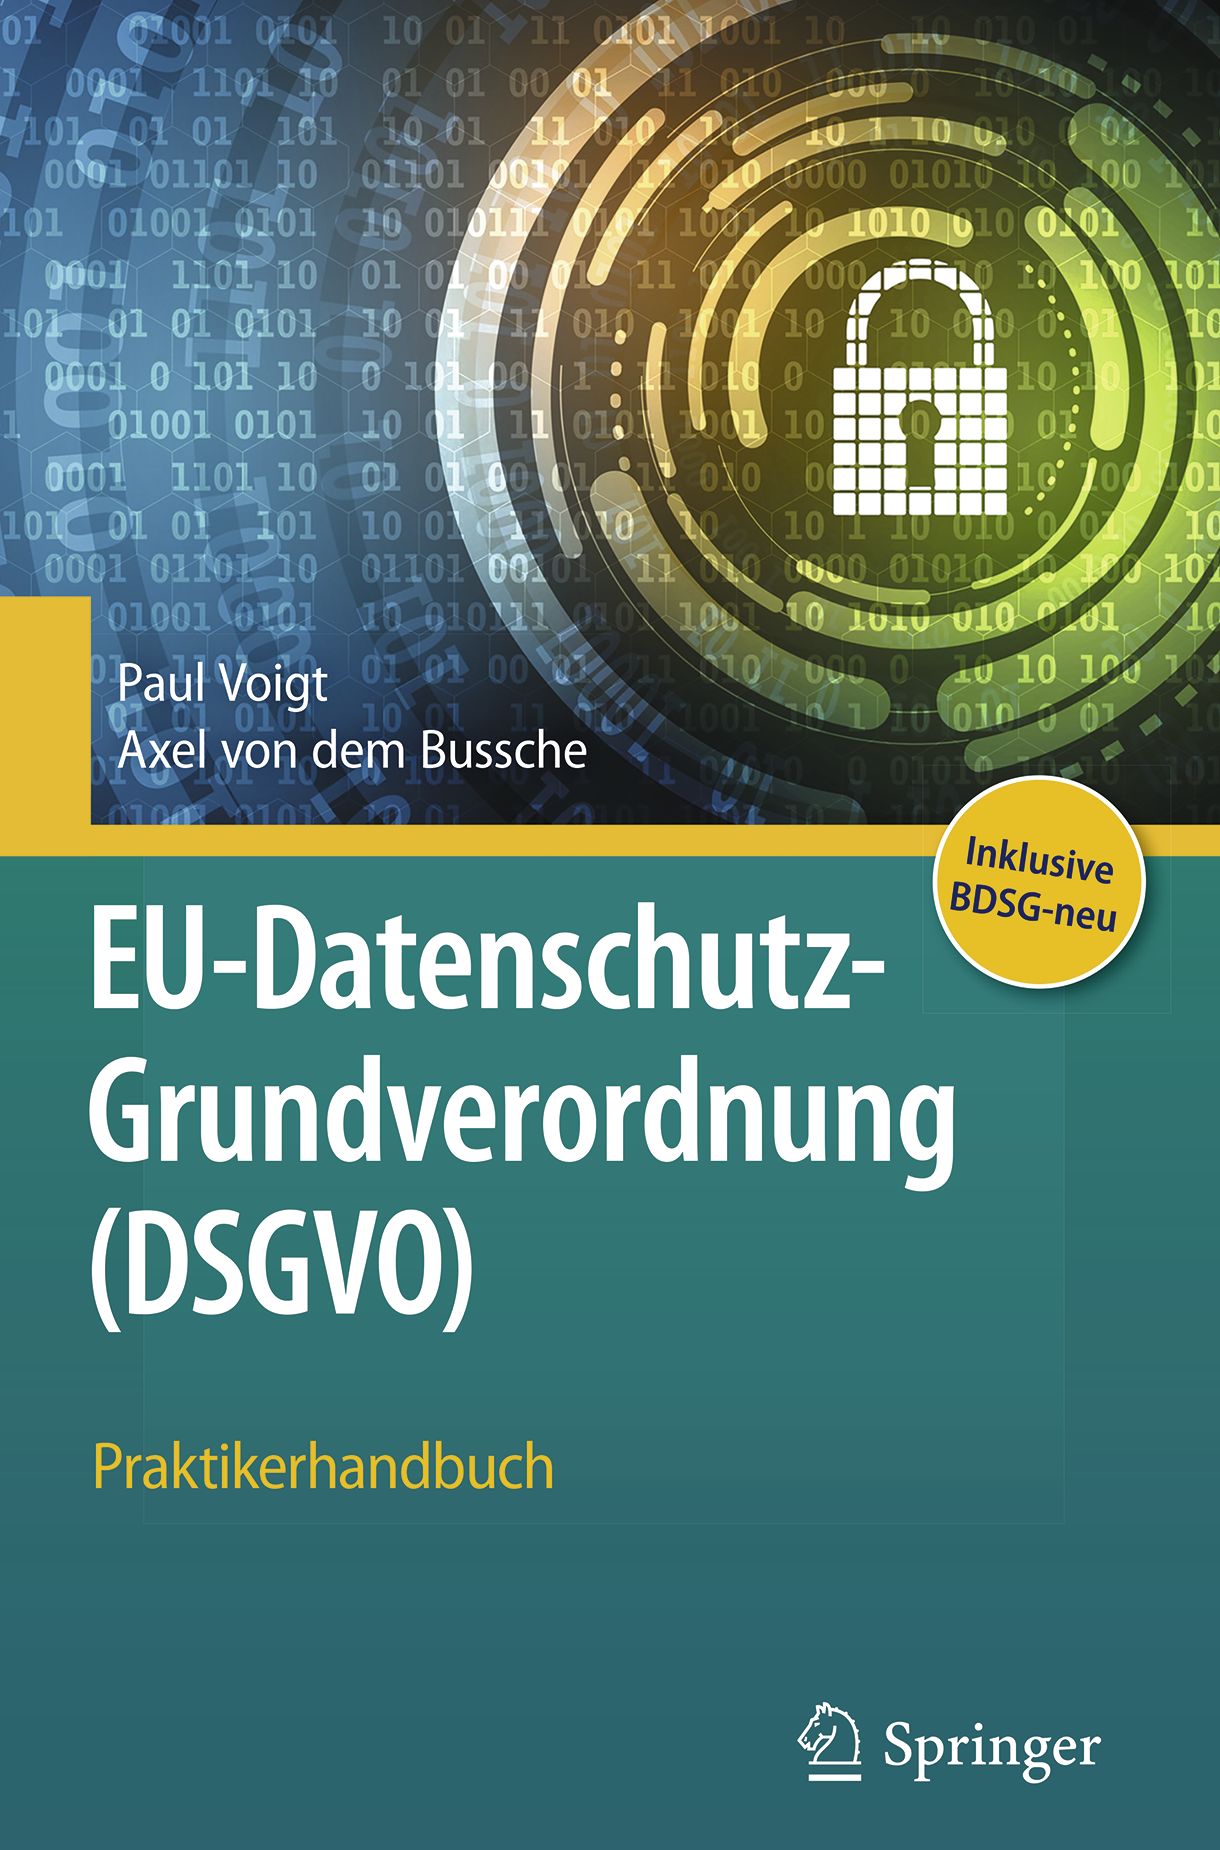 EU Datenschutz Grundverordnung DSGVO